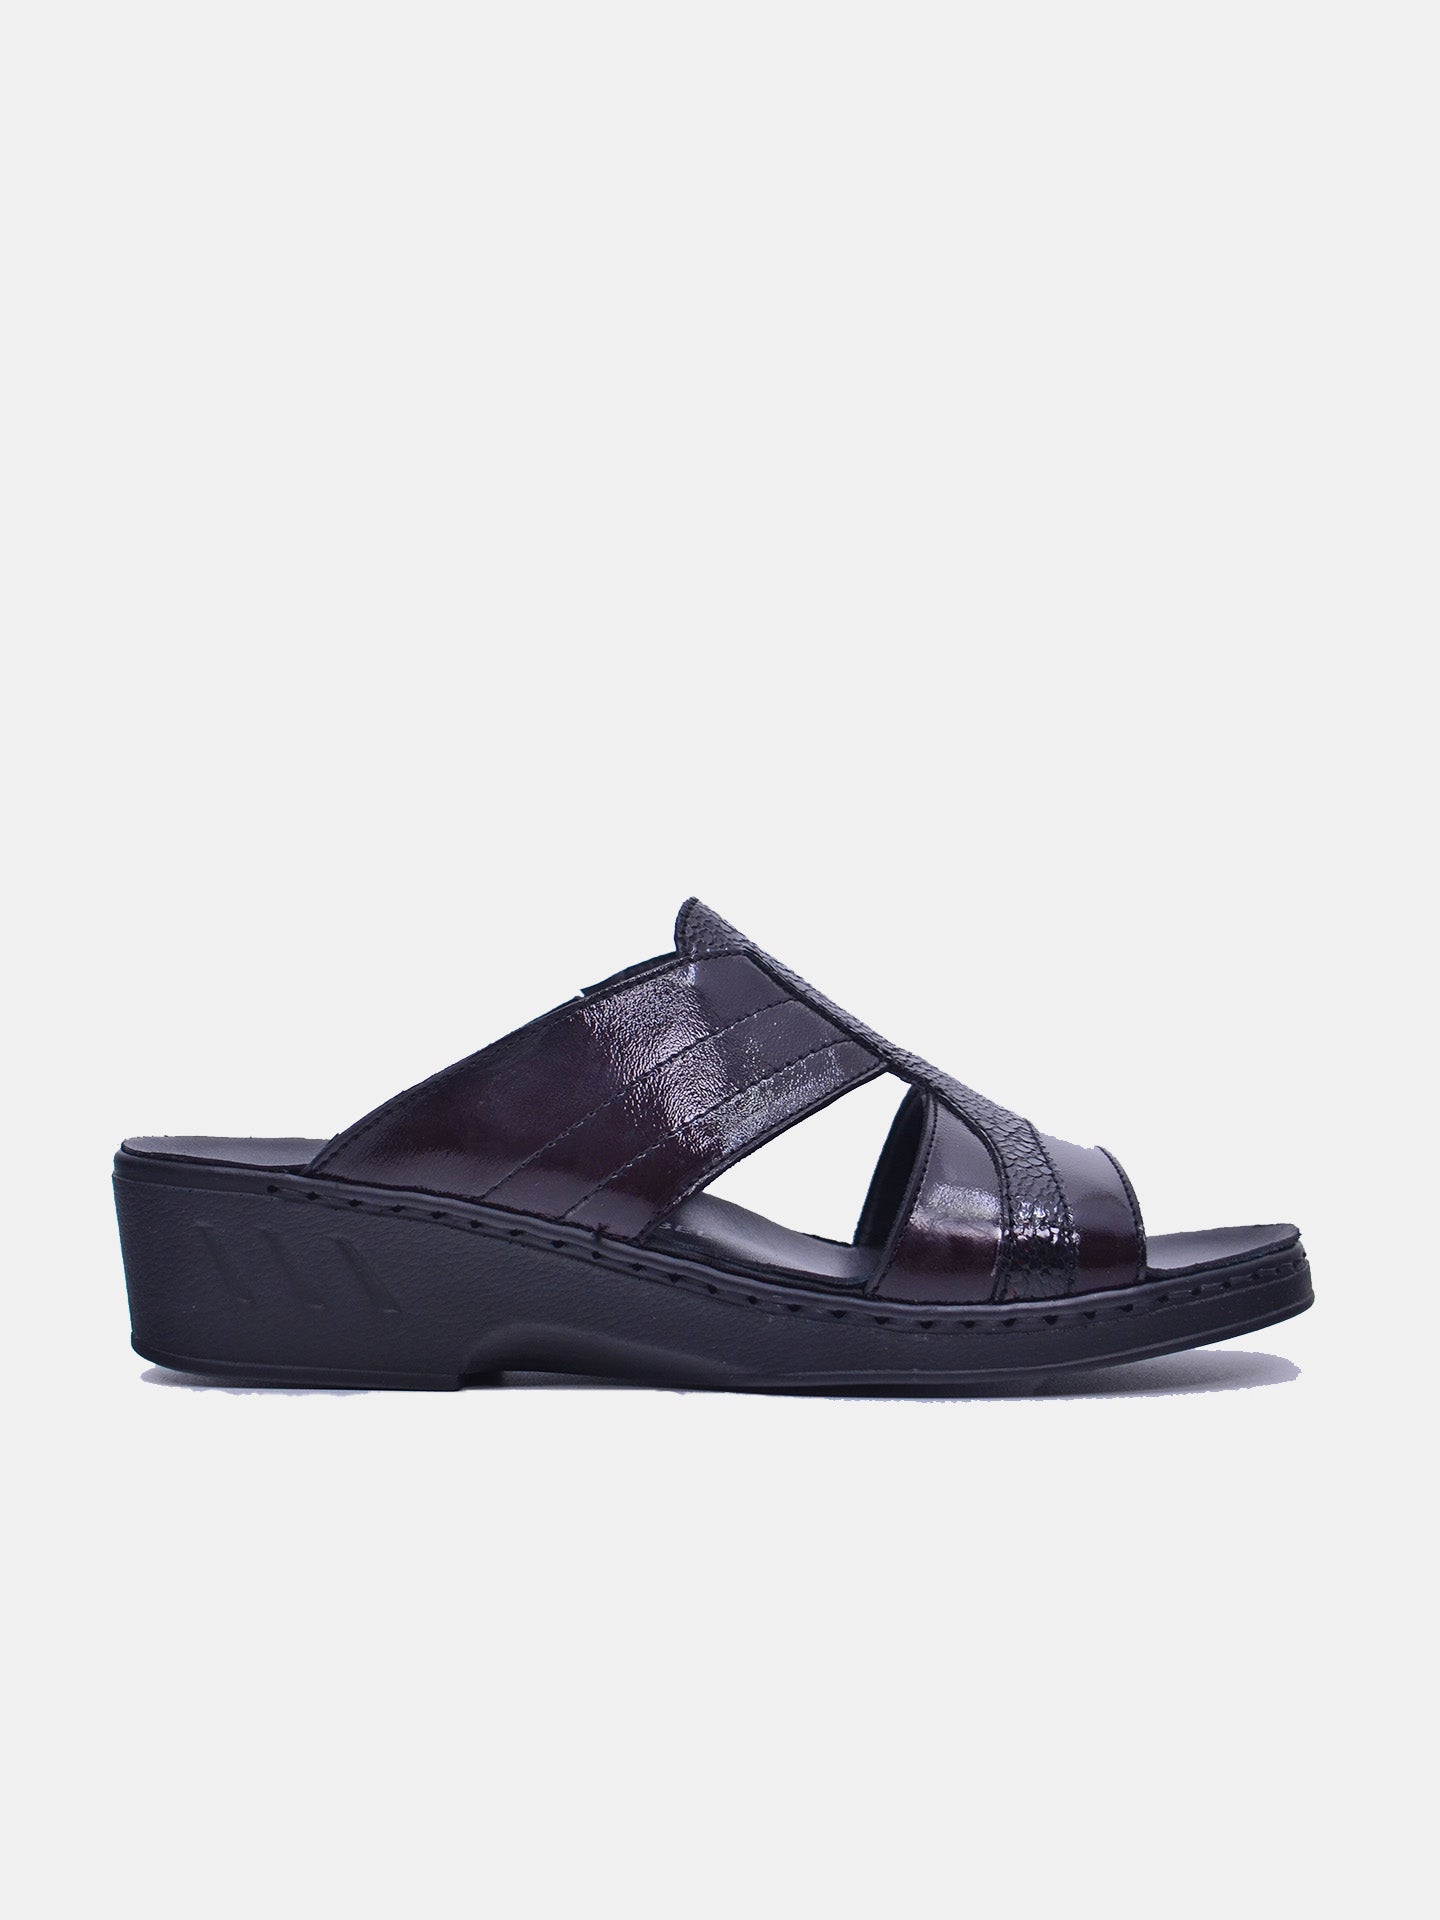 Josef Seibel 08821 Women's Flat Sandals #color_Maroon